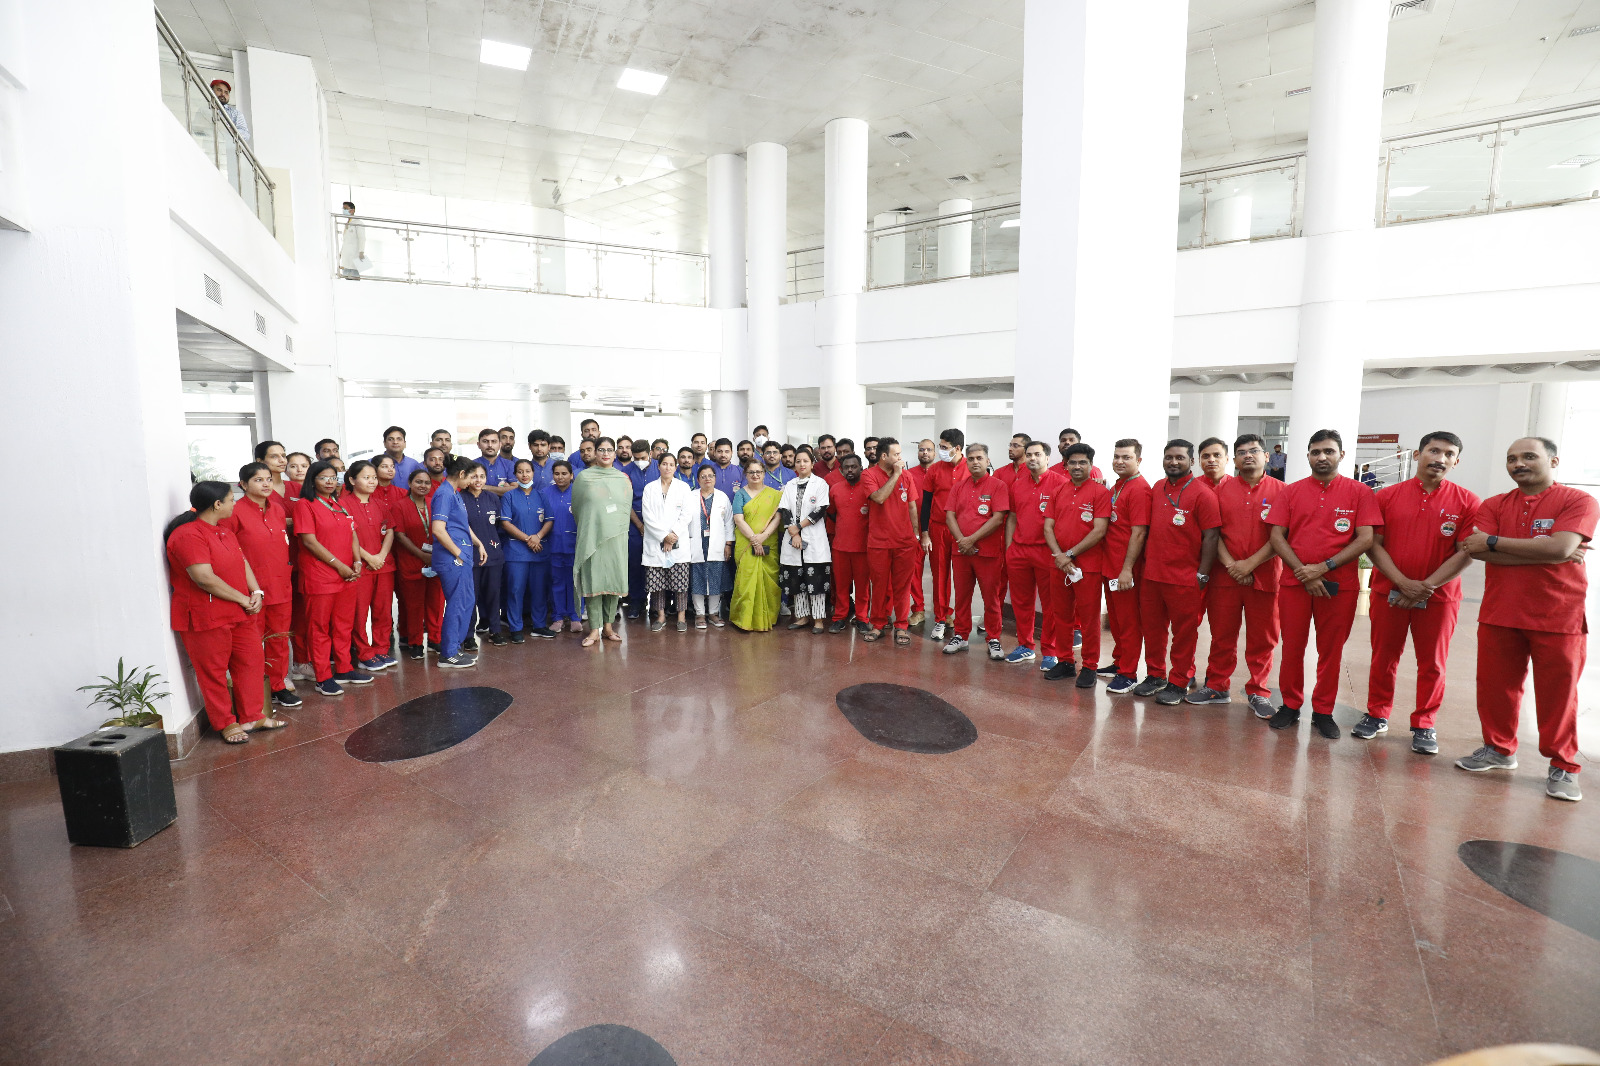 अखिल भारतीय आयुर्विज्ञान संस्थान एम्स ऋषिकेश में अन्तर्राष्ट्रीय नर्सिंग सप्ताह का शुभारम्भ